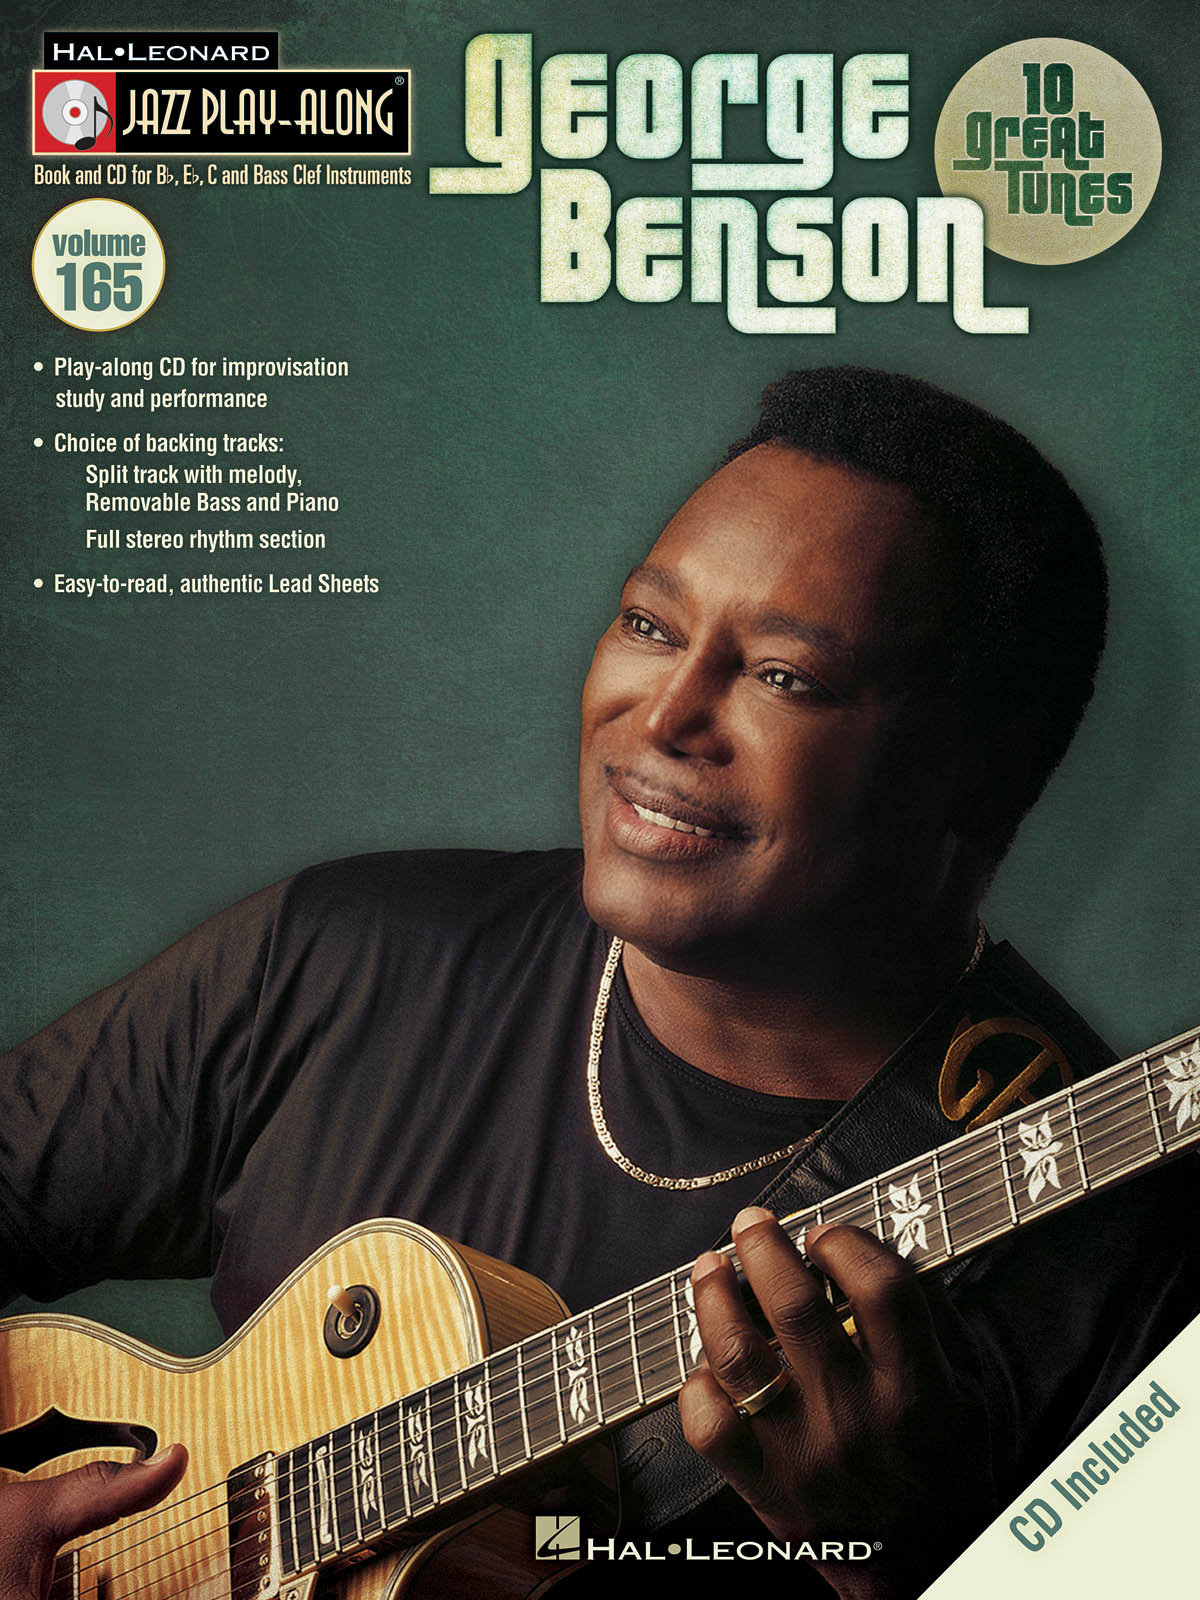 George Benson - Jazz Play-Along Volume 165 - melodie s akordy pro nástroje v ladění C